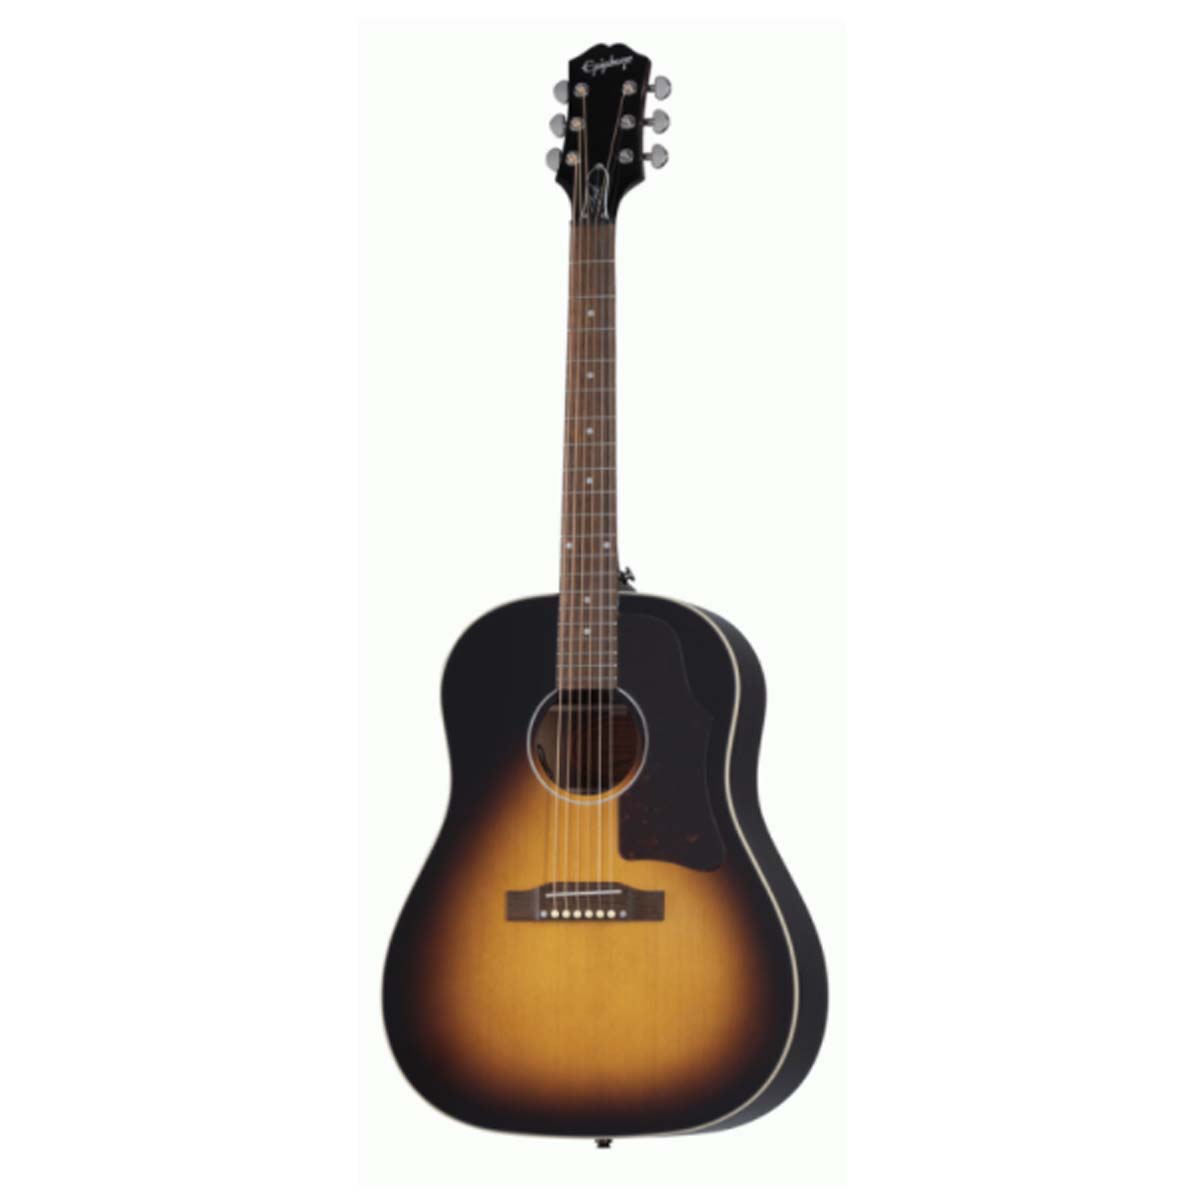 Epiphone Slash Signature J45 Acoustic Guitar November Burst w/ Hardcase